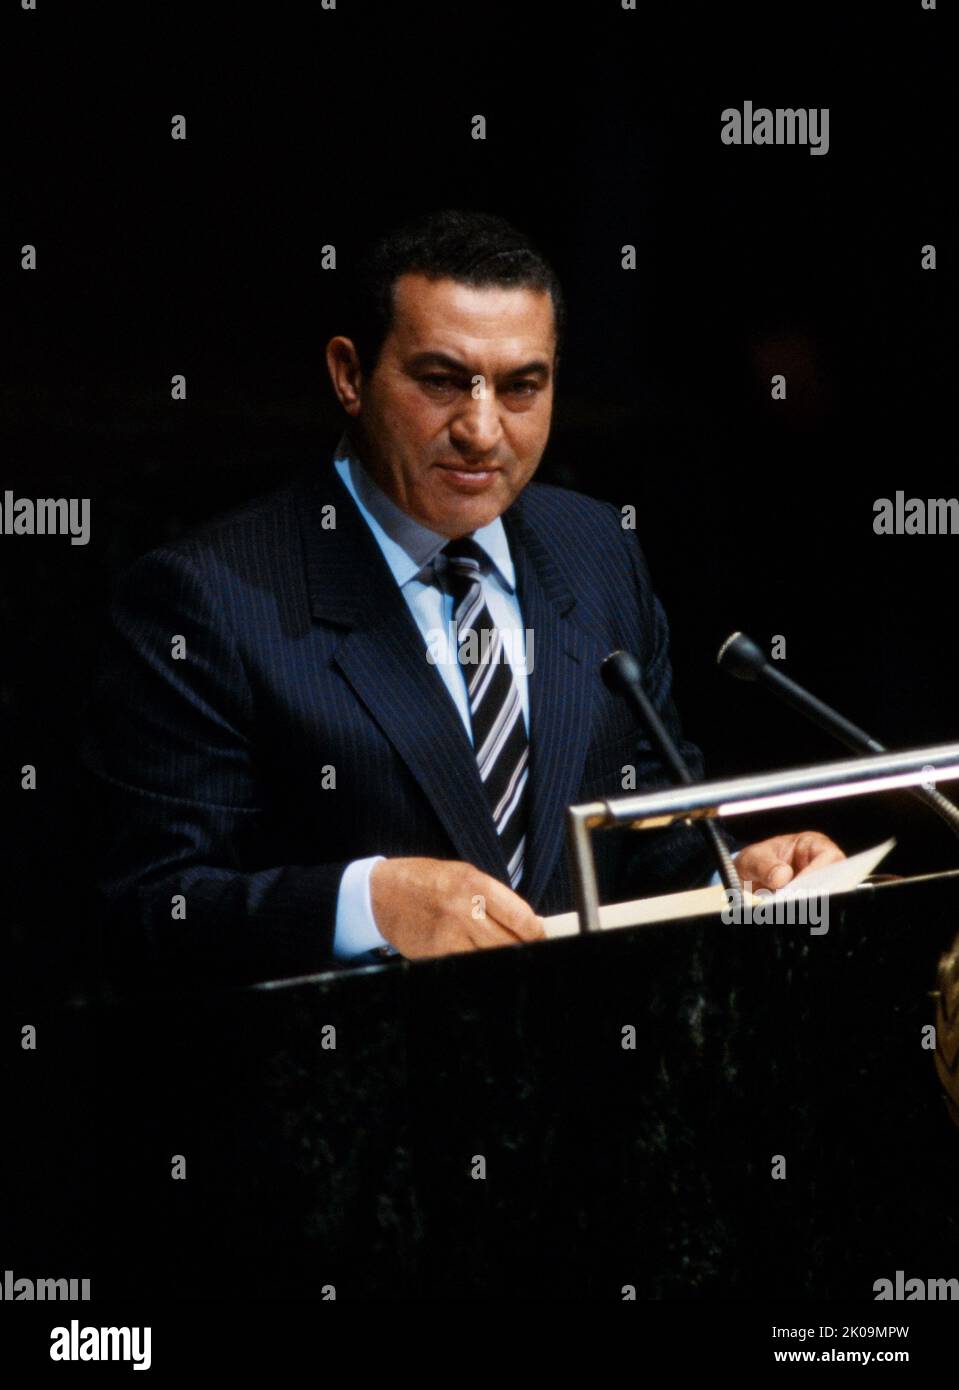 Muhammad Hosni El Sayed Mubarak (4 mai 1928 - 25 février 2020) était un chef militaire et politique égyptien qui a servi comme quatrième président de l'Égypte de 1981 à 2011. Banque D'Images